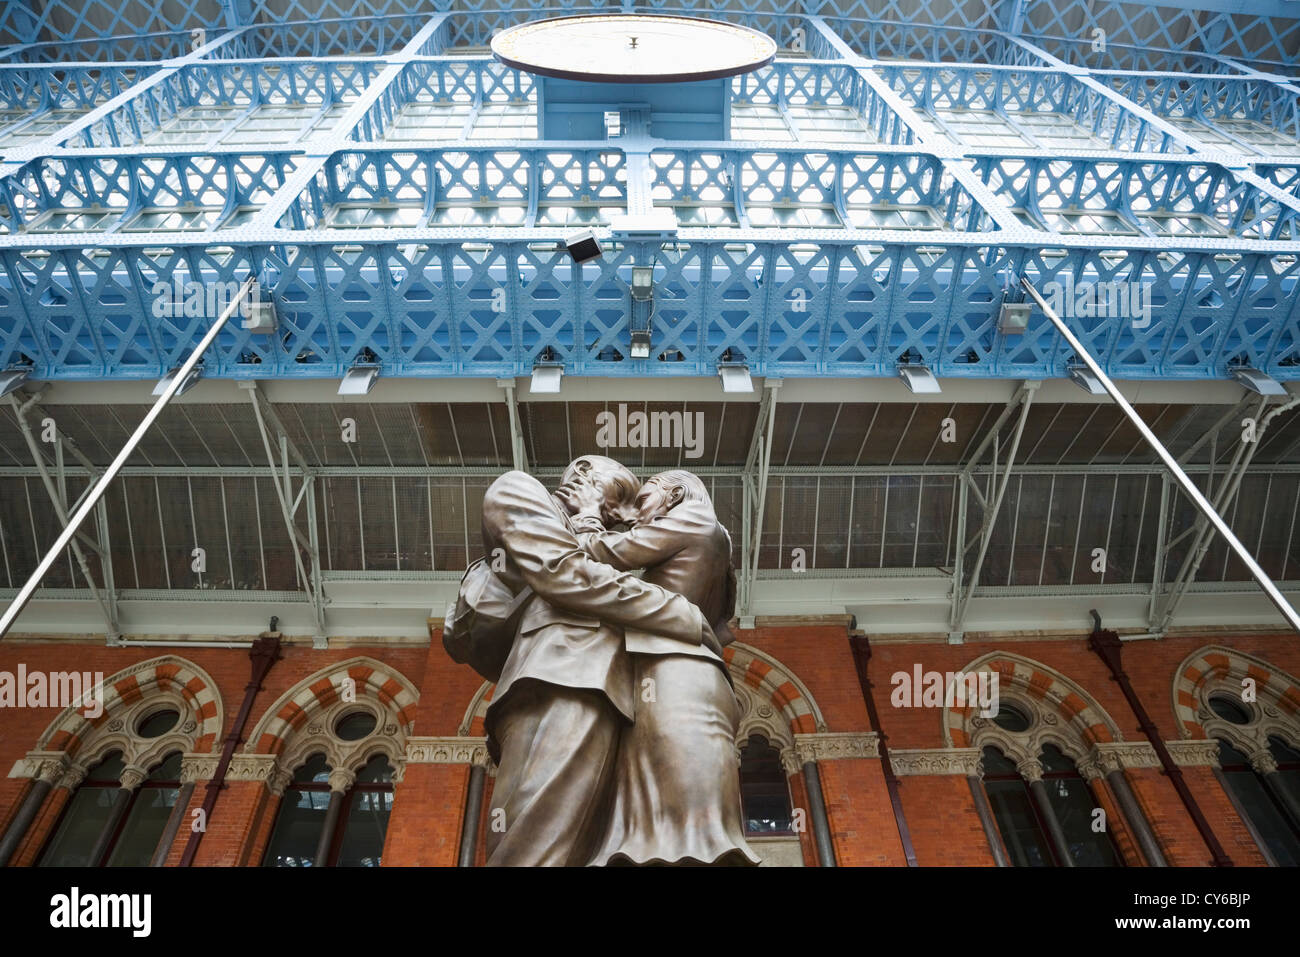 "Le lieu de rencontre' sculpture à la gare St Pancras. Londres. L'Angleterre. UK. Banque D'Images